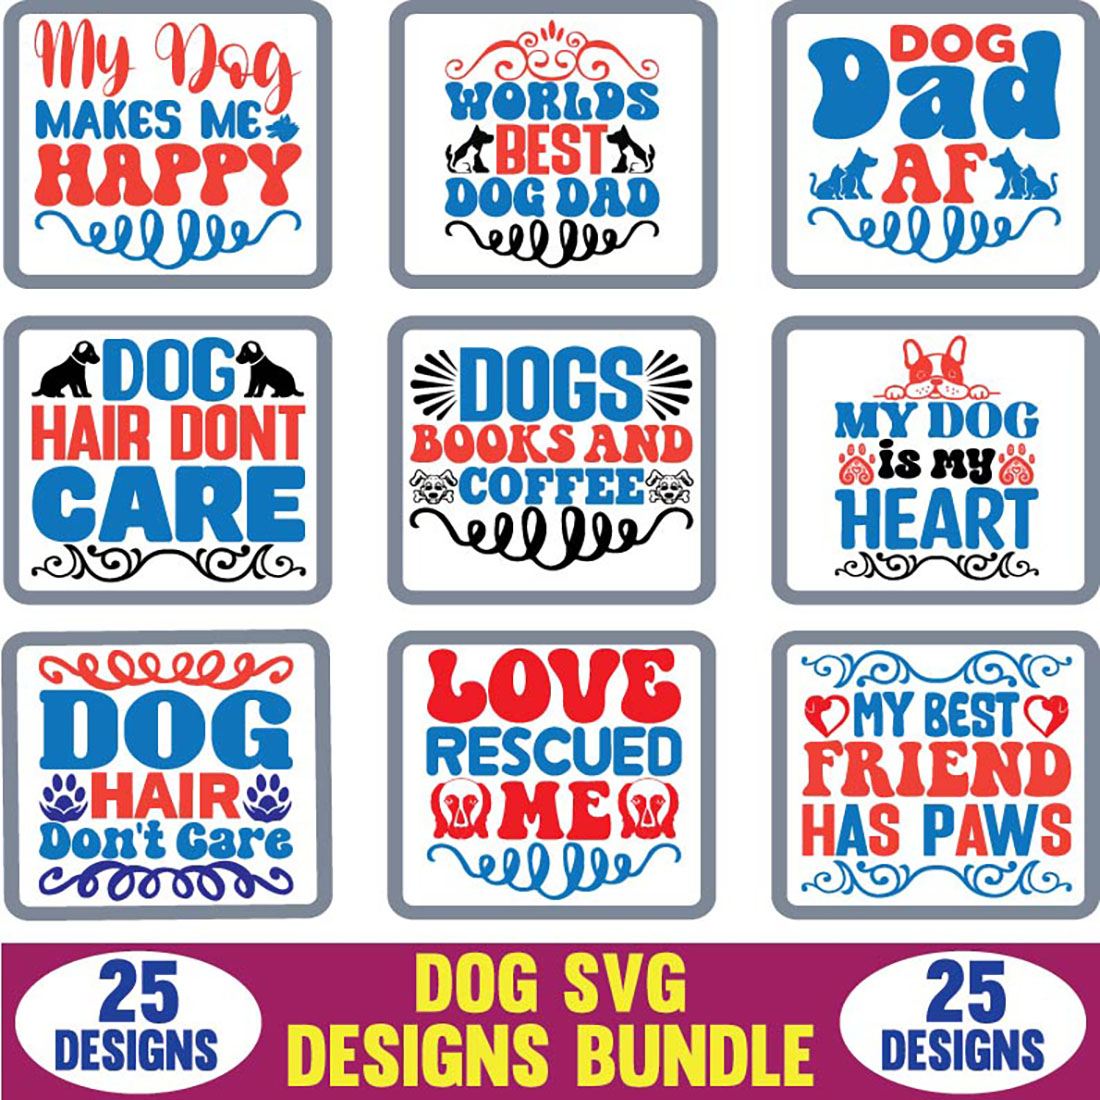 Dog svg designs bundle.